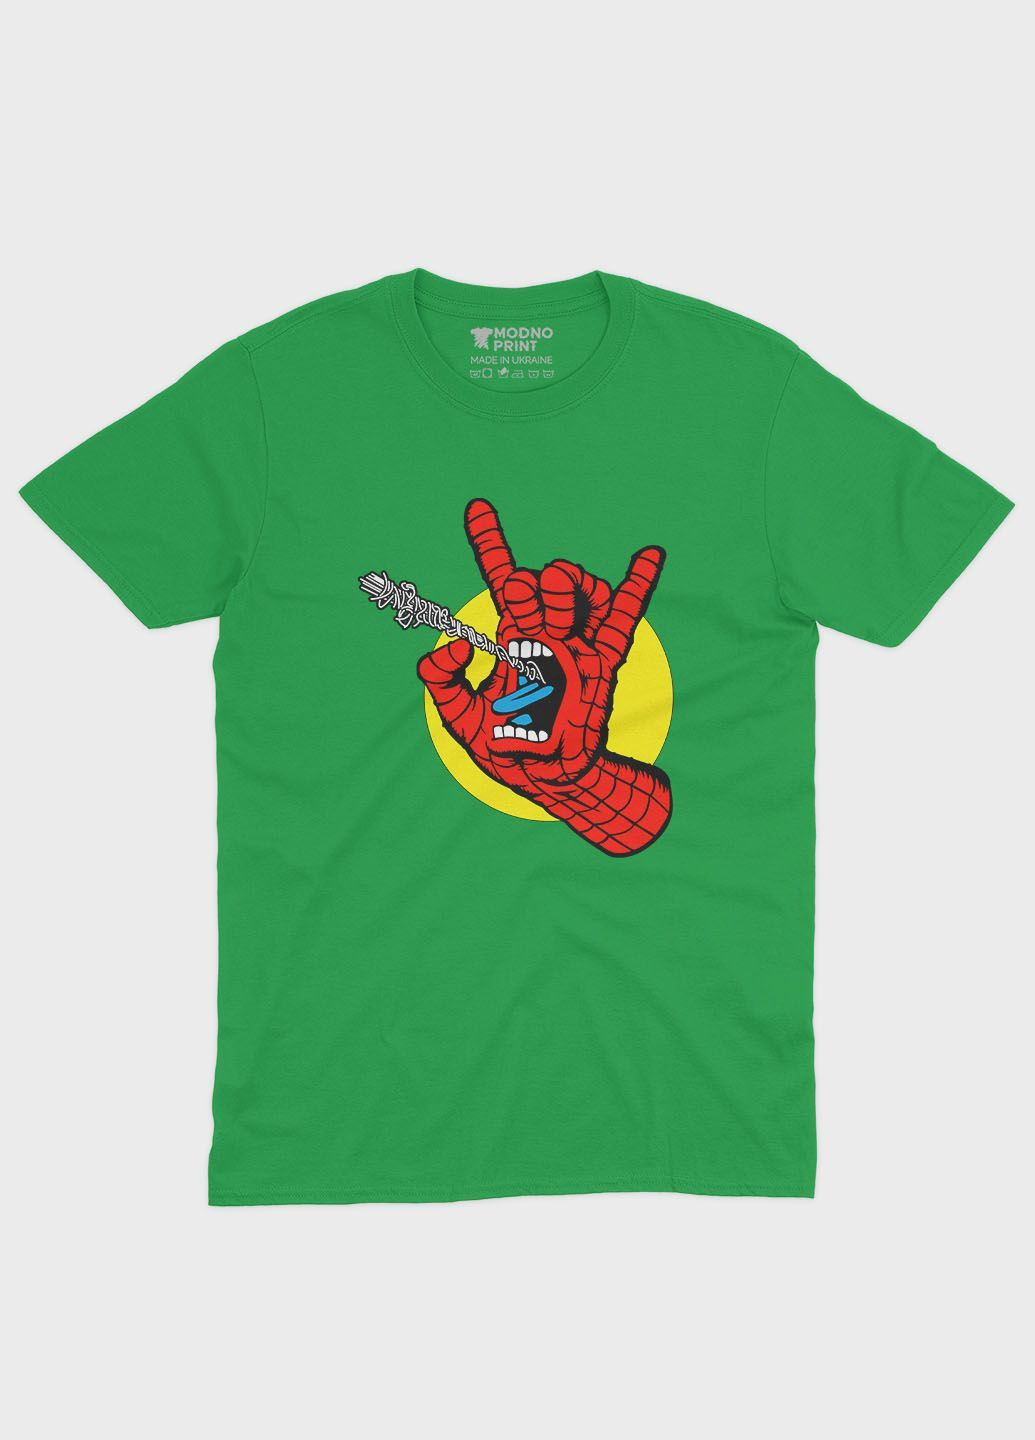 Зеленая демисезонная футболка для мальчика с принтом супергероя - человек-паук (ts001-1-keg-006-014-103-b) Modno